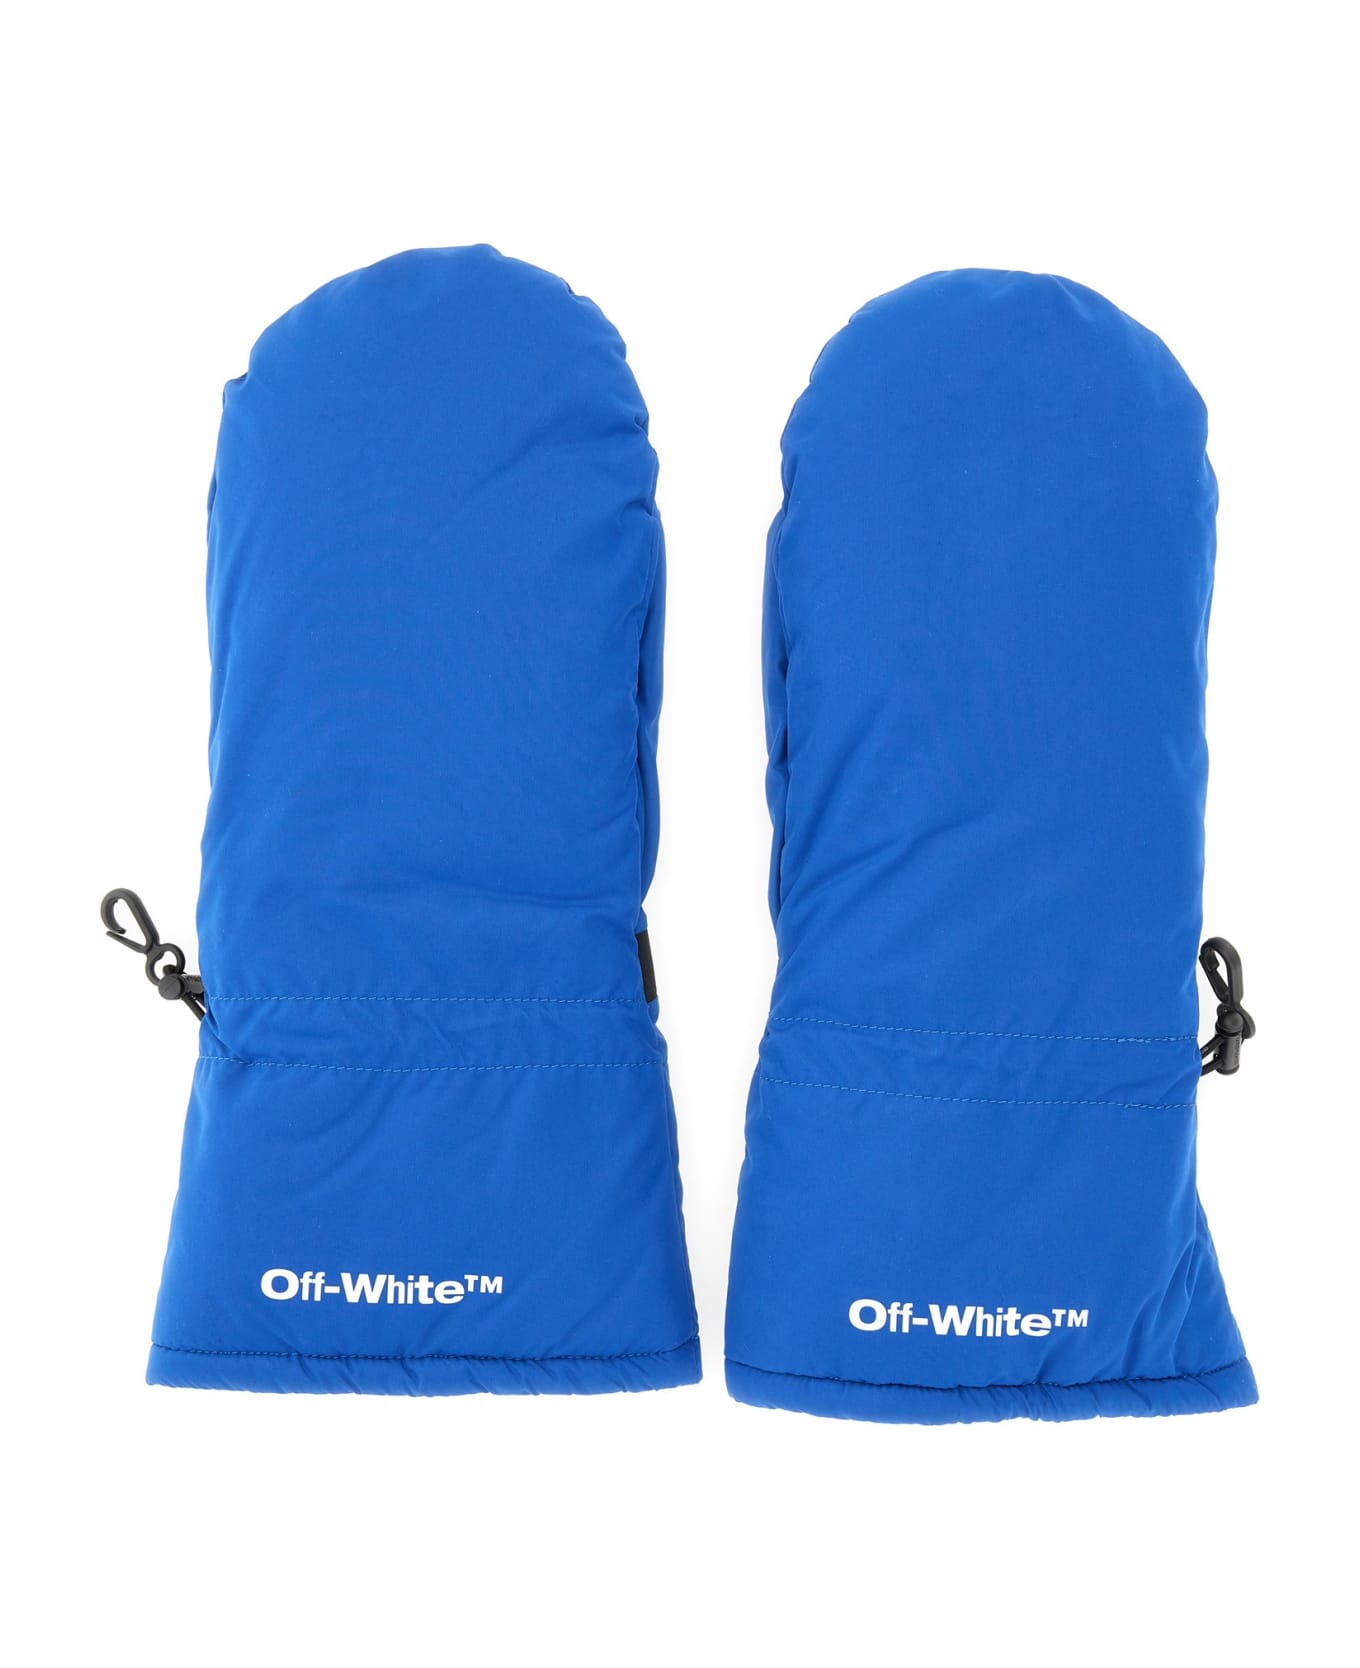 Off-White Printed Mitten Gloves - BLU